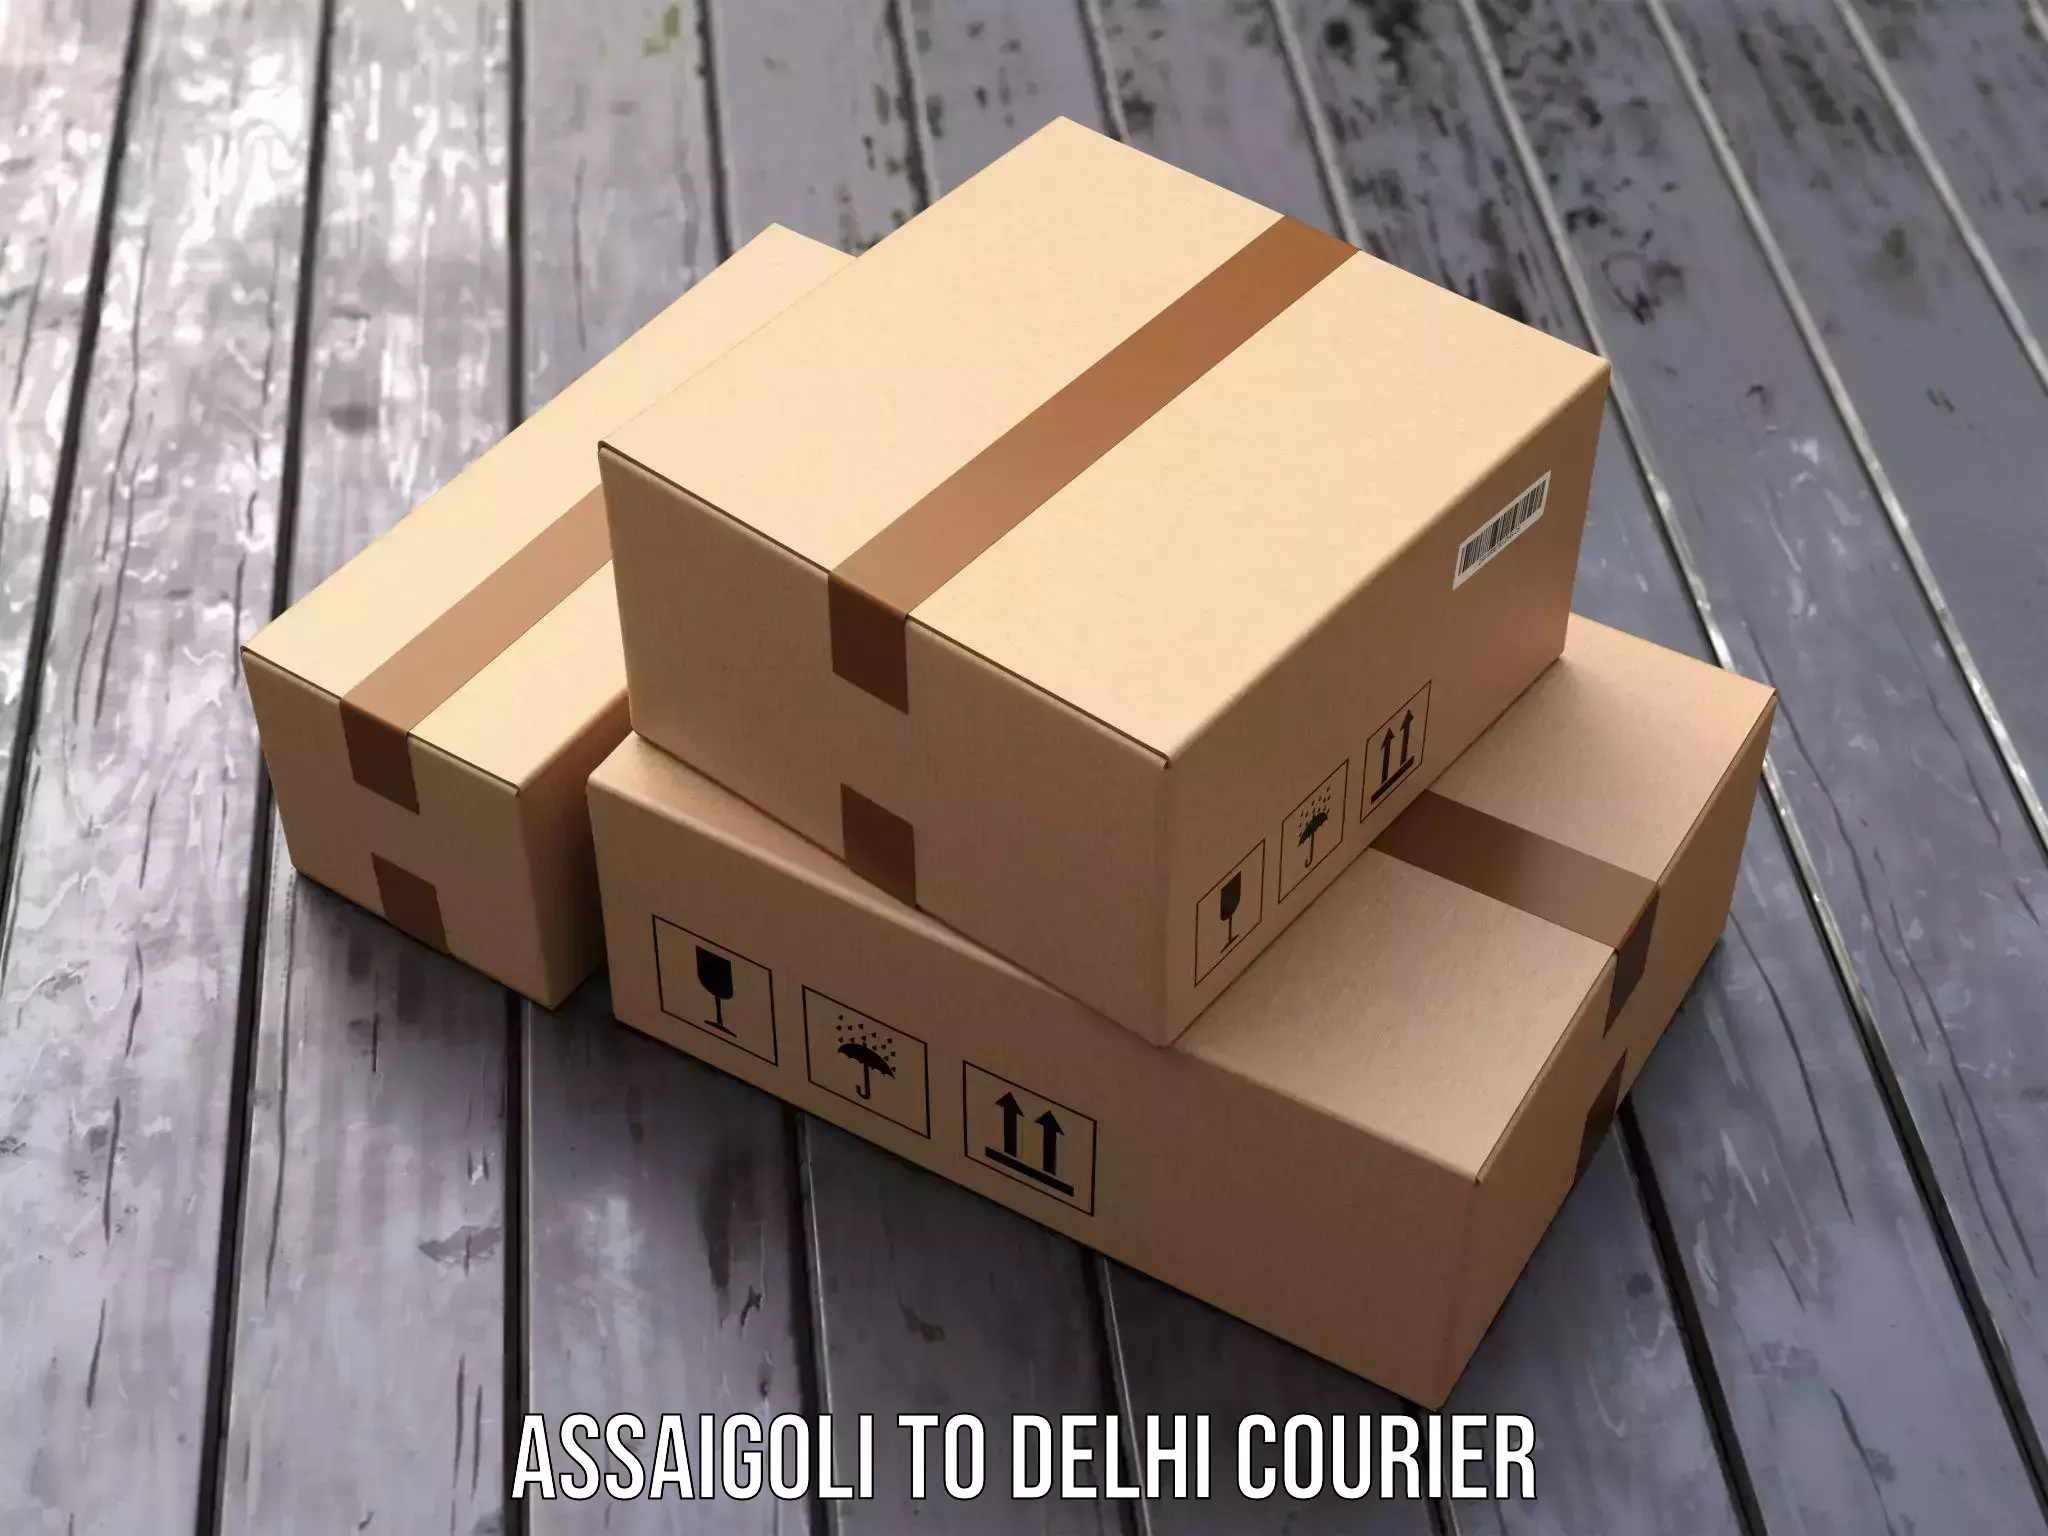 Overnight delivery services Assaigoli to Jamia Millia Islamia New Delhi